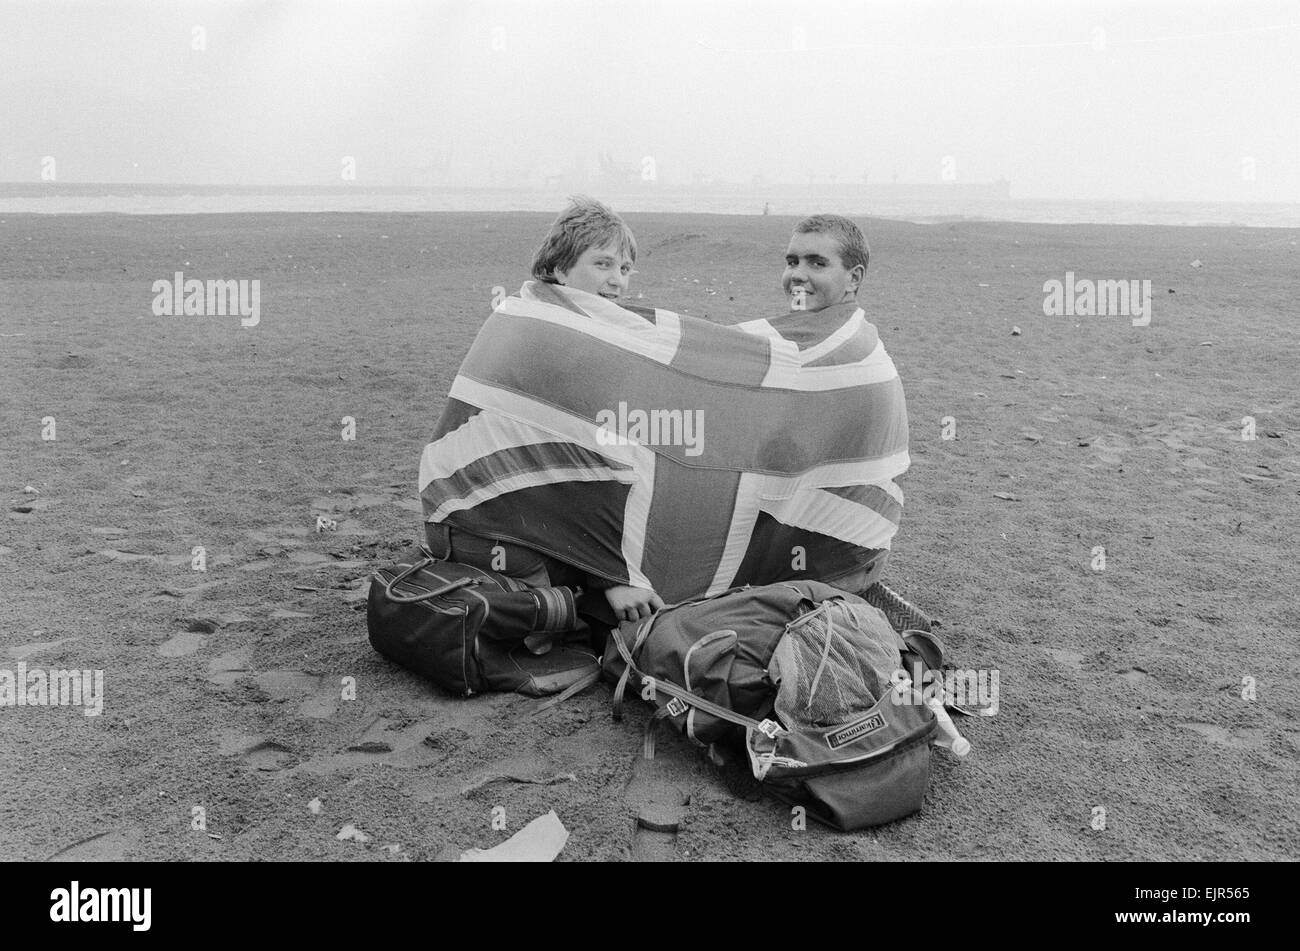 Weltmeisterschaft 1982 in Spanien. Englischen Fans, eingewickelt in ein Union Jack-Flagge an einem Strand in Spanien. 10. Juni 1982. Lokalen Caption *** Stockfoto